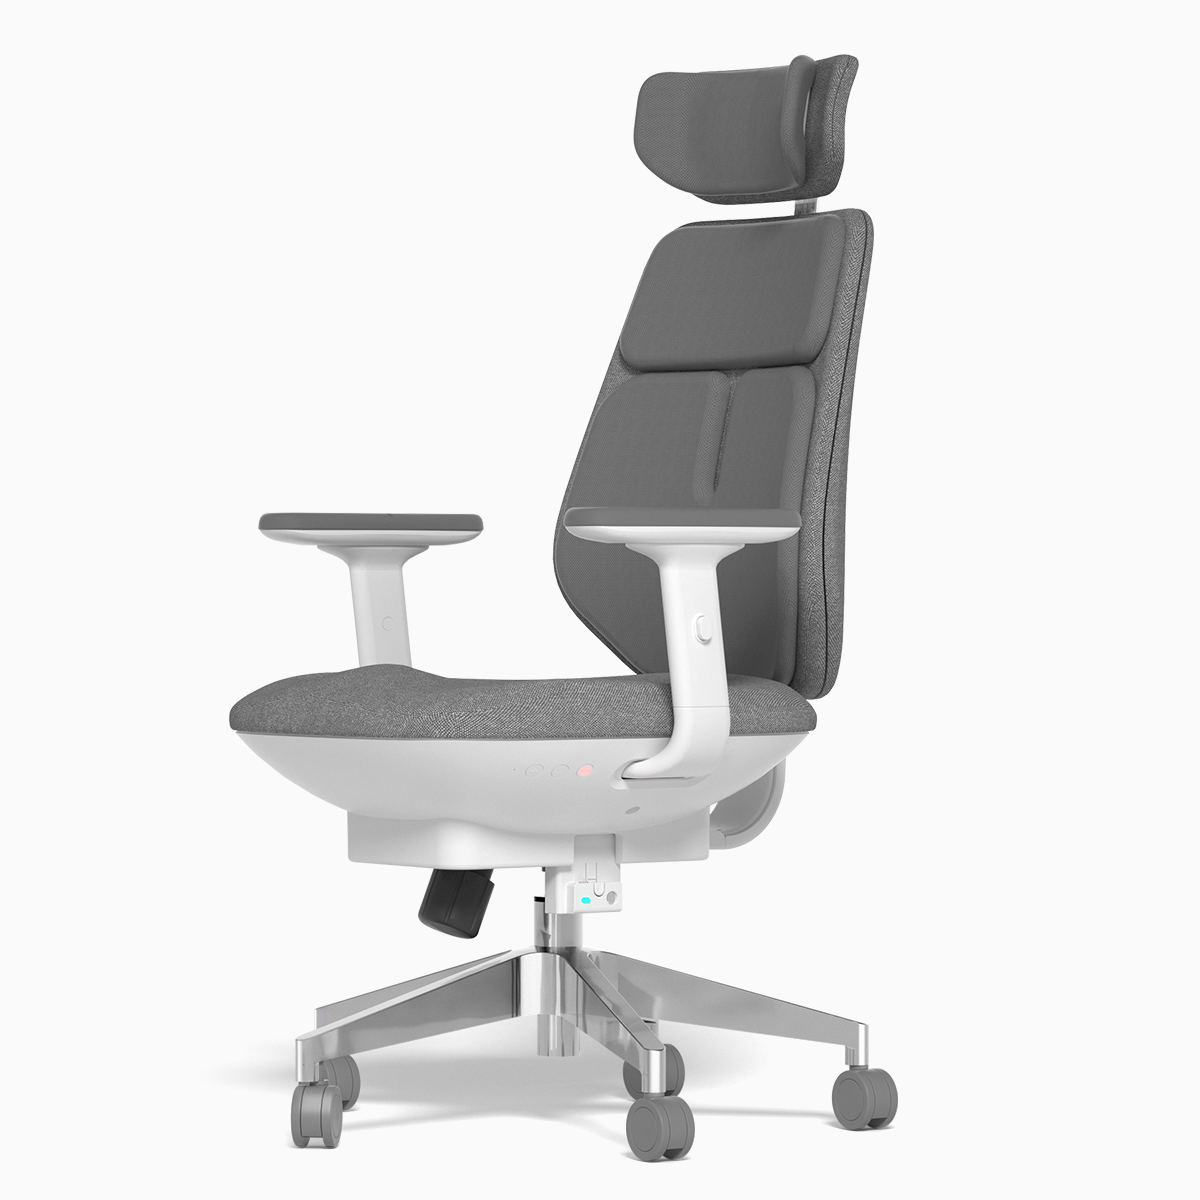 KingSmith Air Smart Office Chair